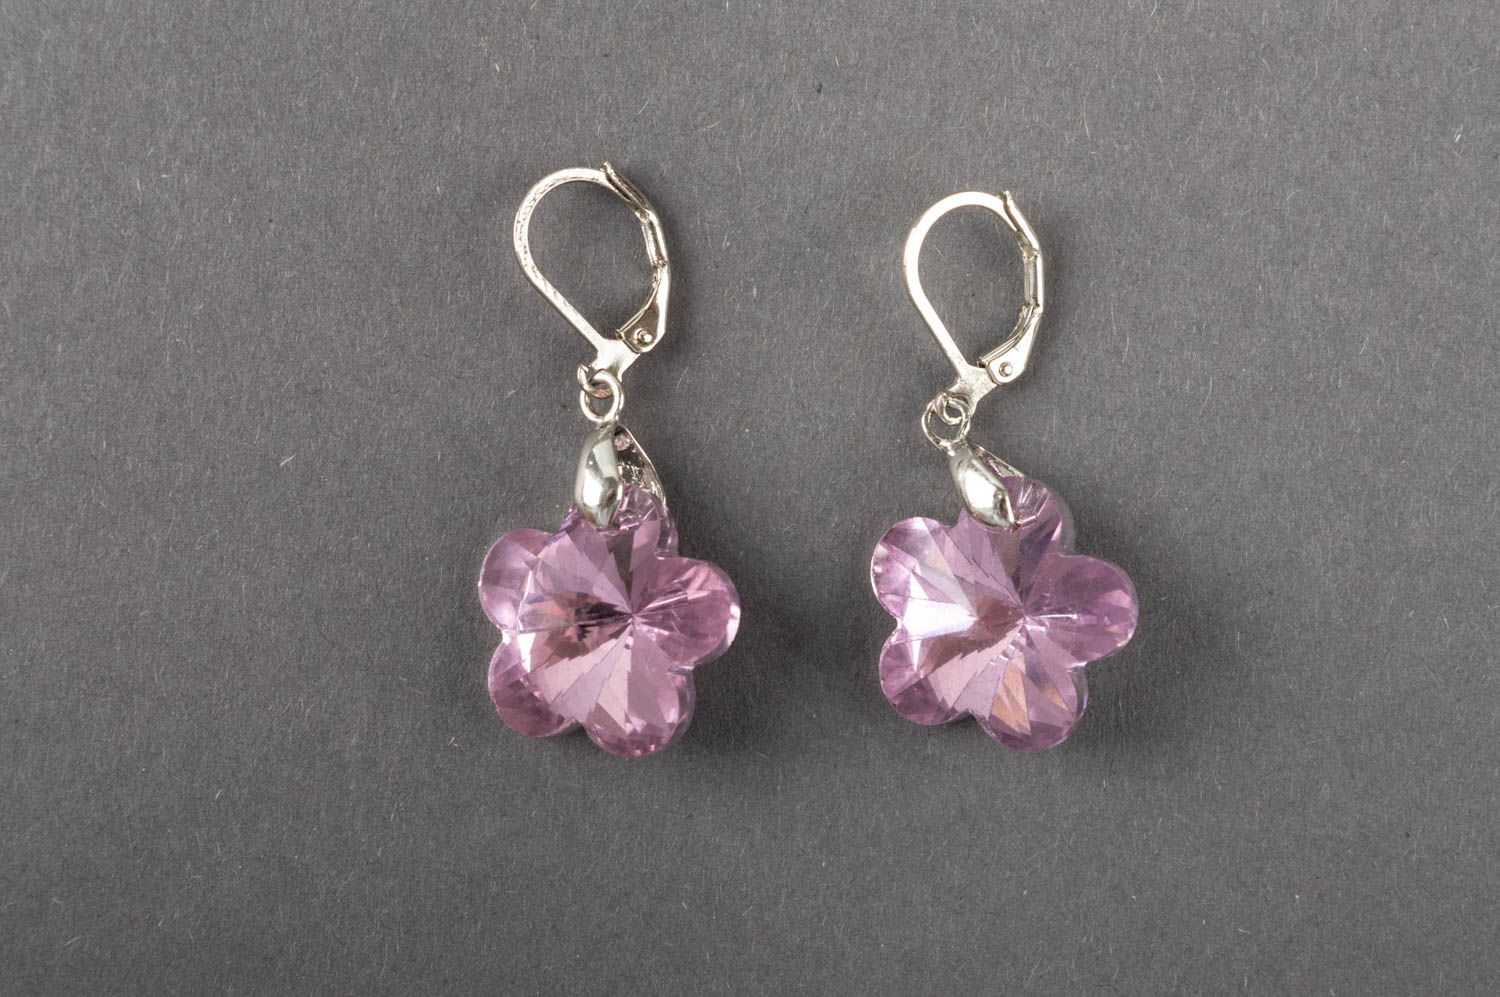 Boucles d'oreilles avec cristaux roses en forme de fleurs pendantes faites main photo 2